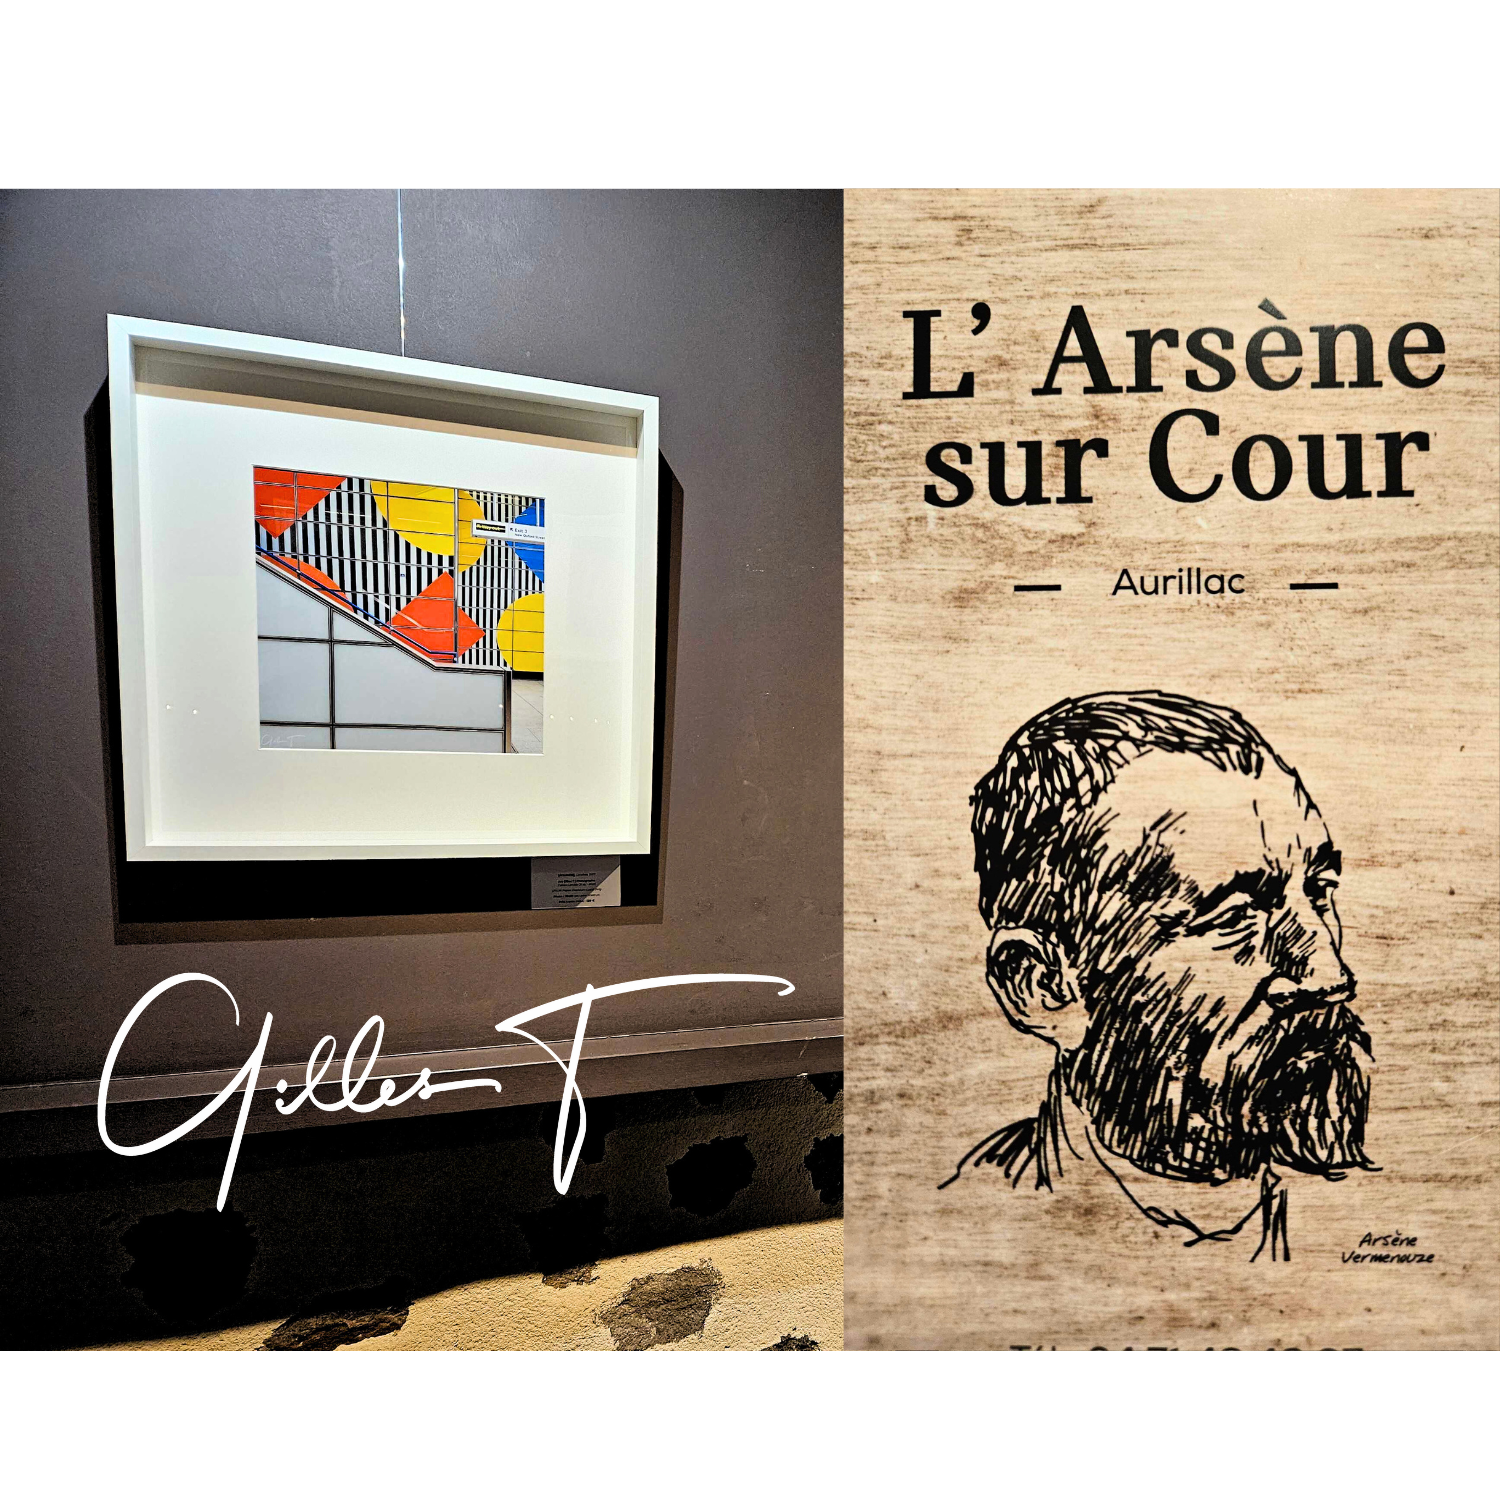 Restaurant Arsène sur Cour, Aurillac, exposition artiste Gilles Thouvenin, cantal art